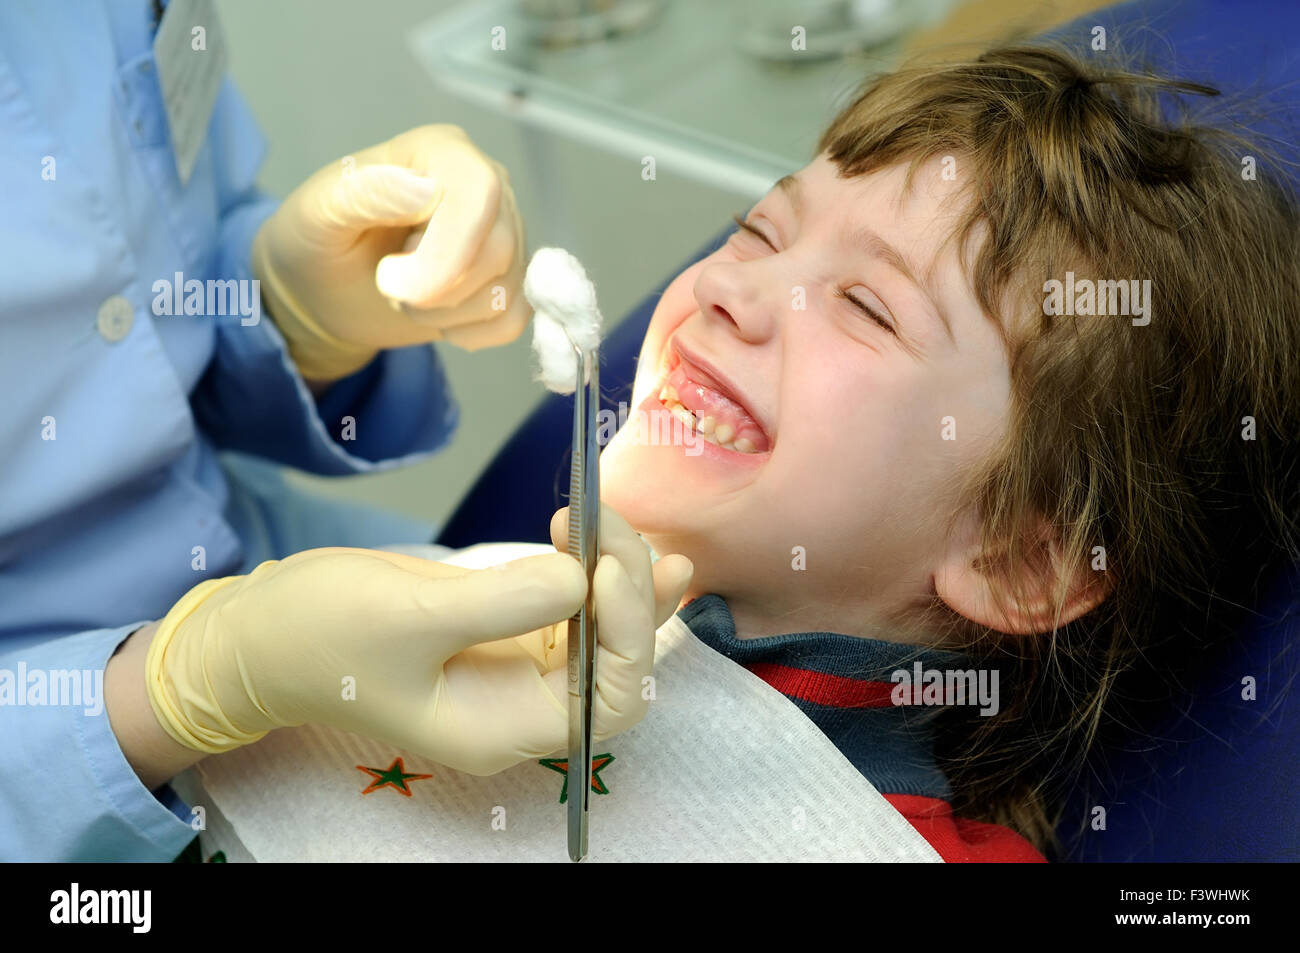 smiling girl at a dentist examination Stock Photo